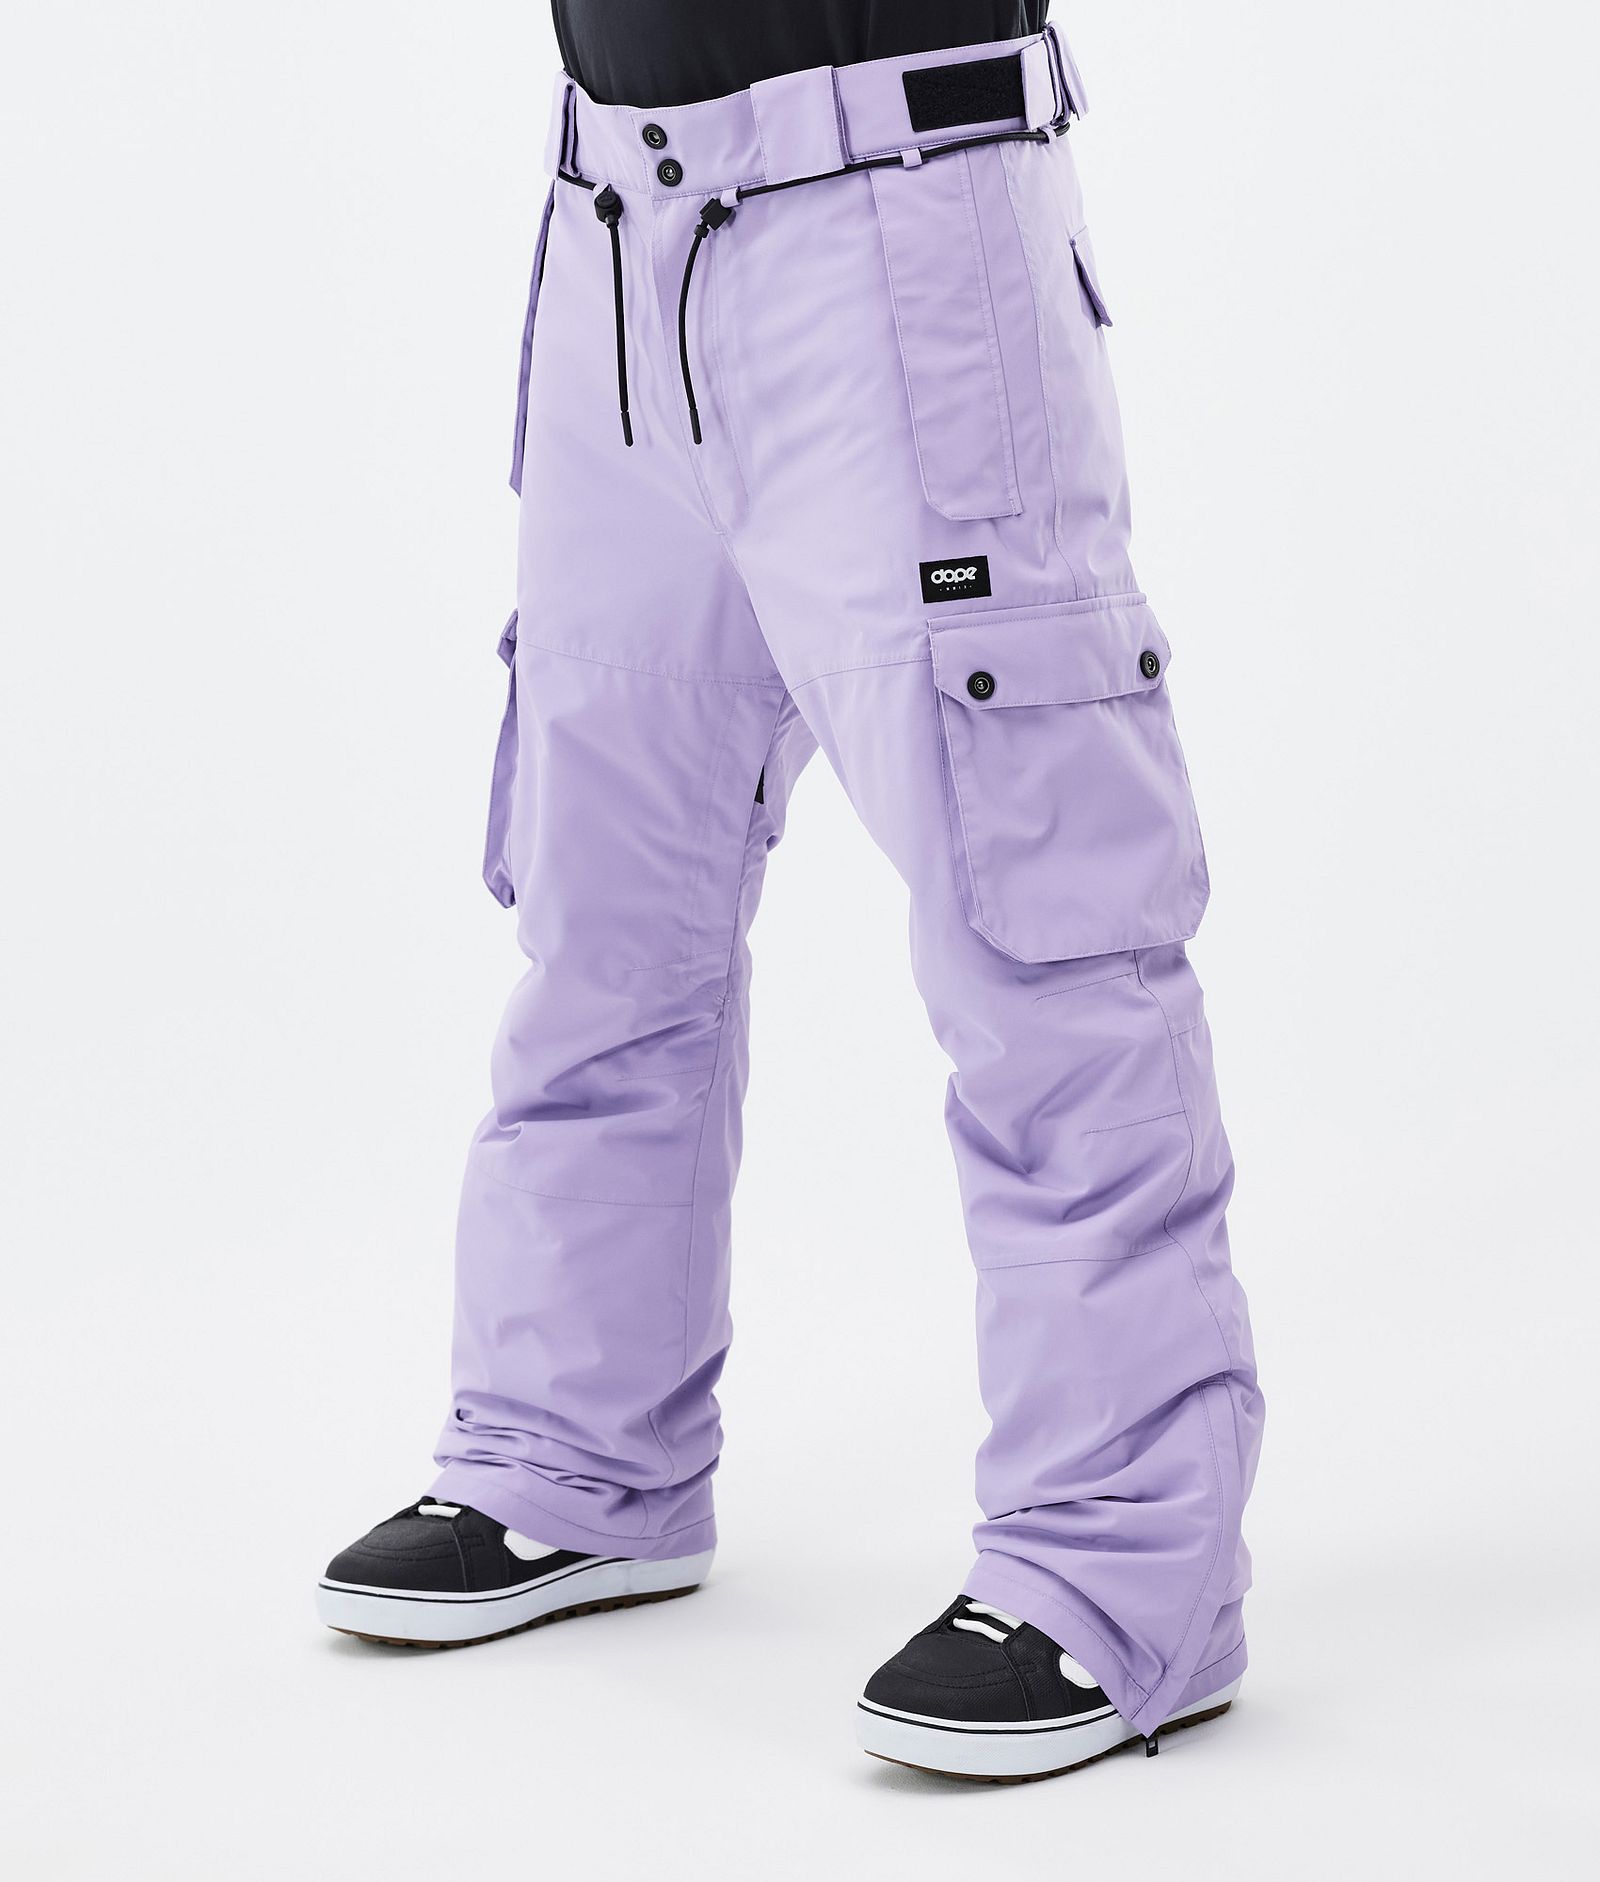 Dope Iconic Kalhoty na Snowboard Pánské Faded Violet Renewed, Obrázek 1 z 7